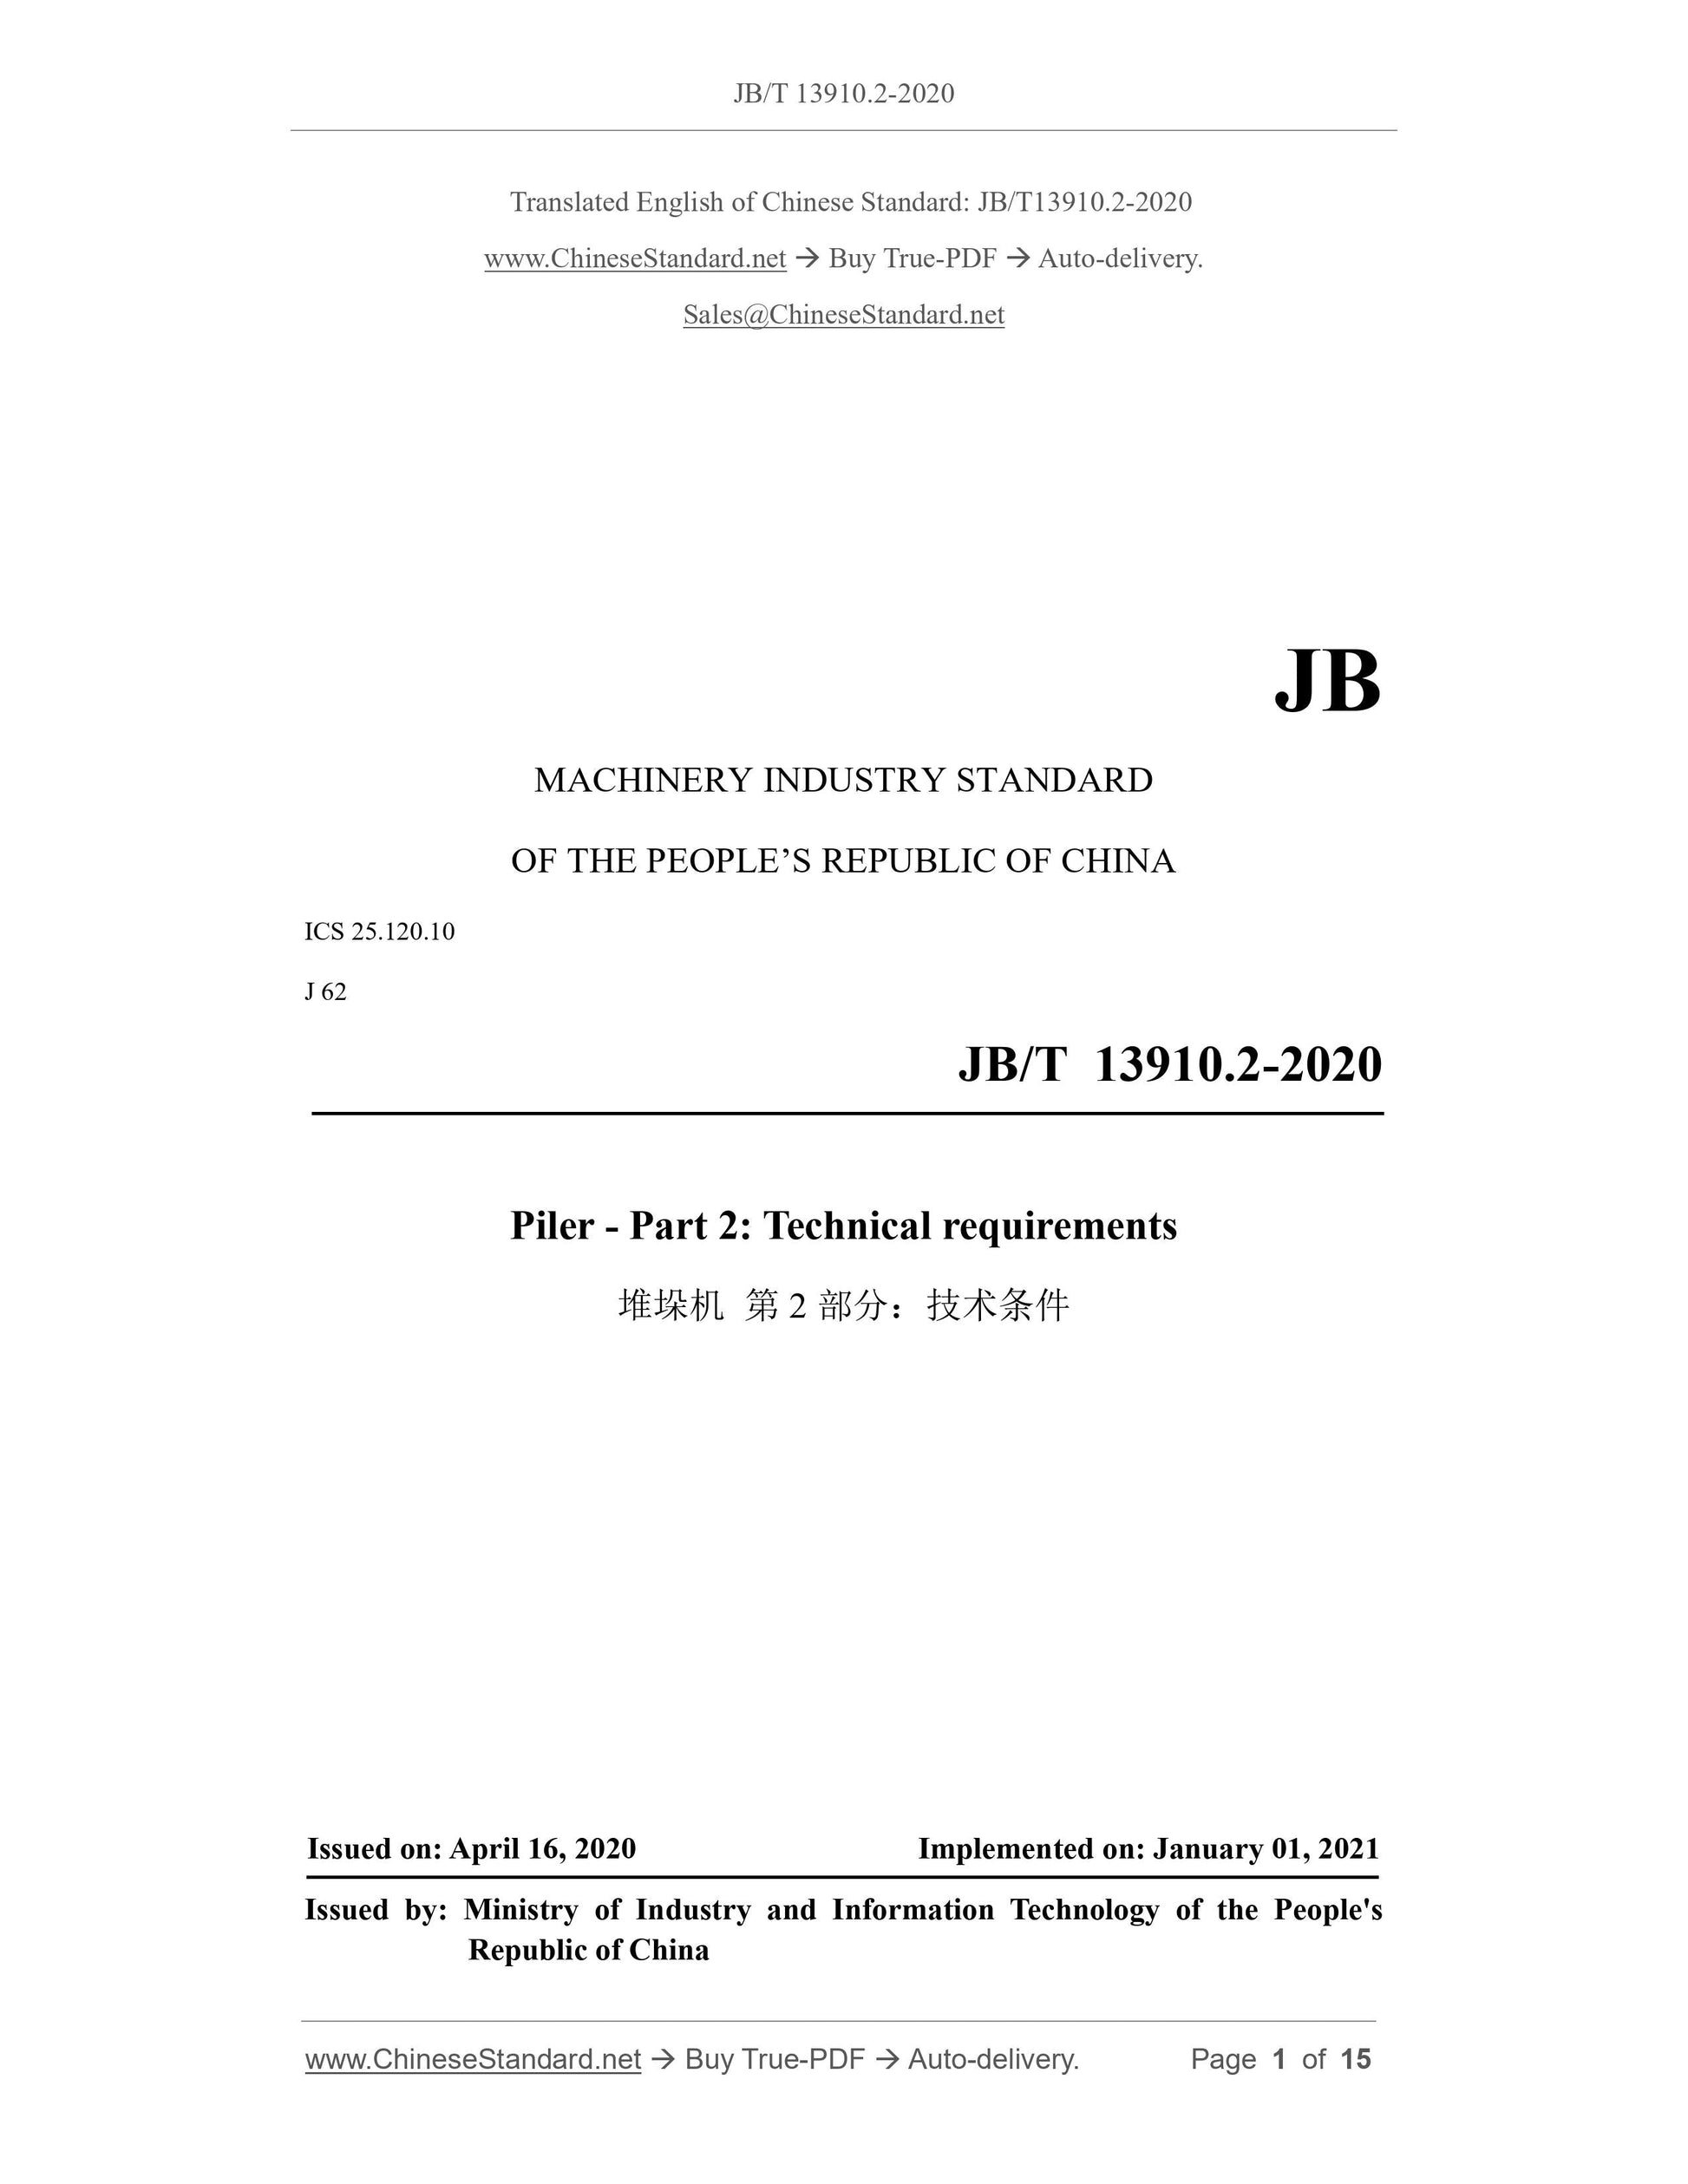 JB/T 13910.2-2020 Page 1